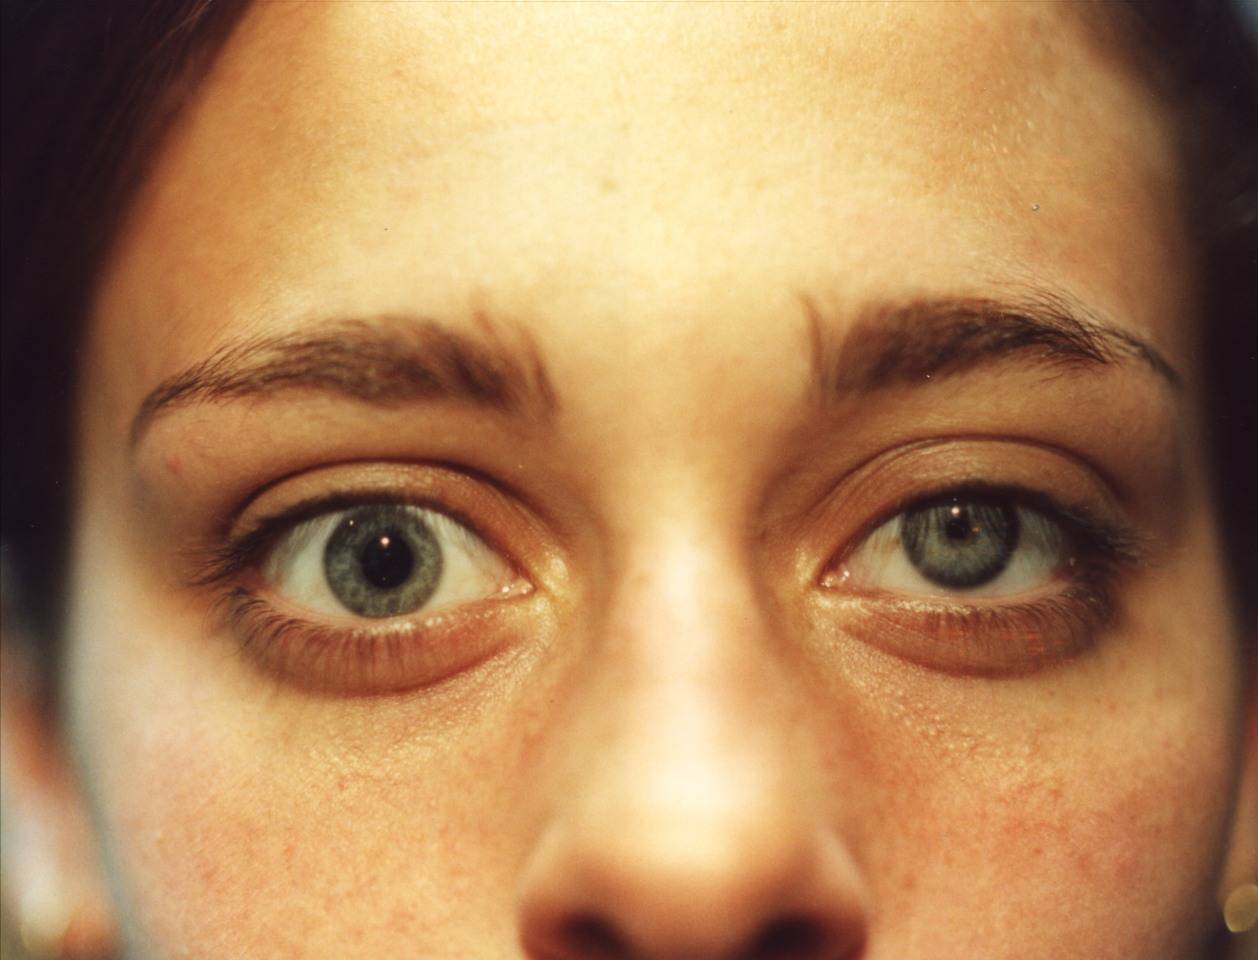 Анизокория глаза: причины, лечение, симптомы и диагностика